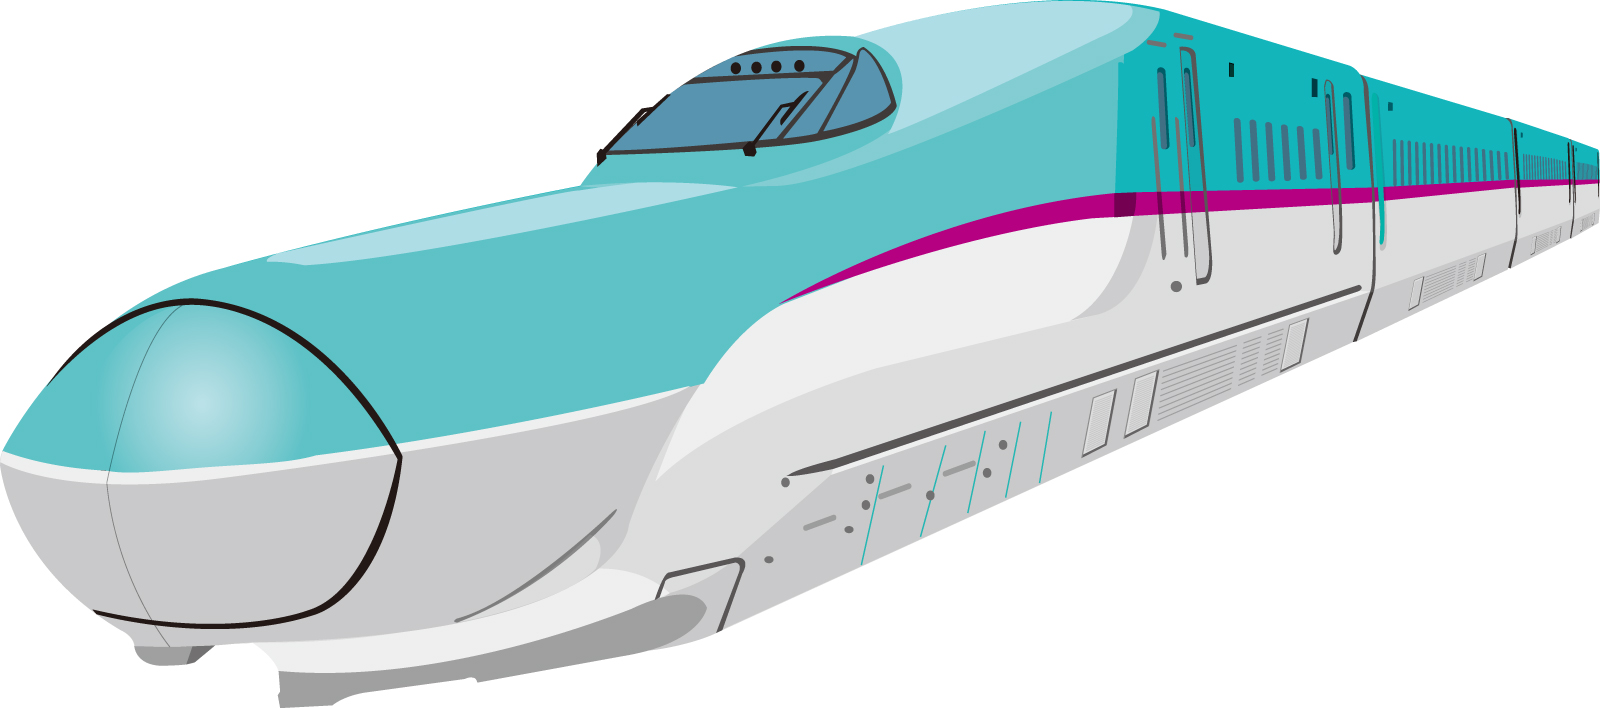 北海道新幹線の空席 混雑を確認して予約 グッド アドバイス情報局